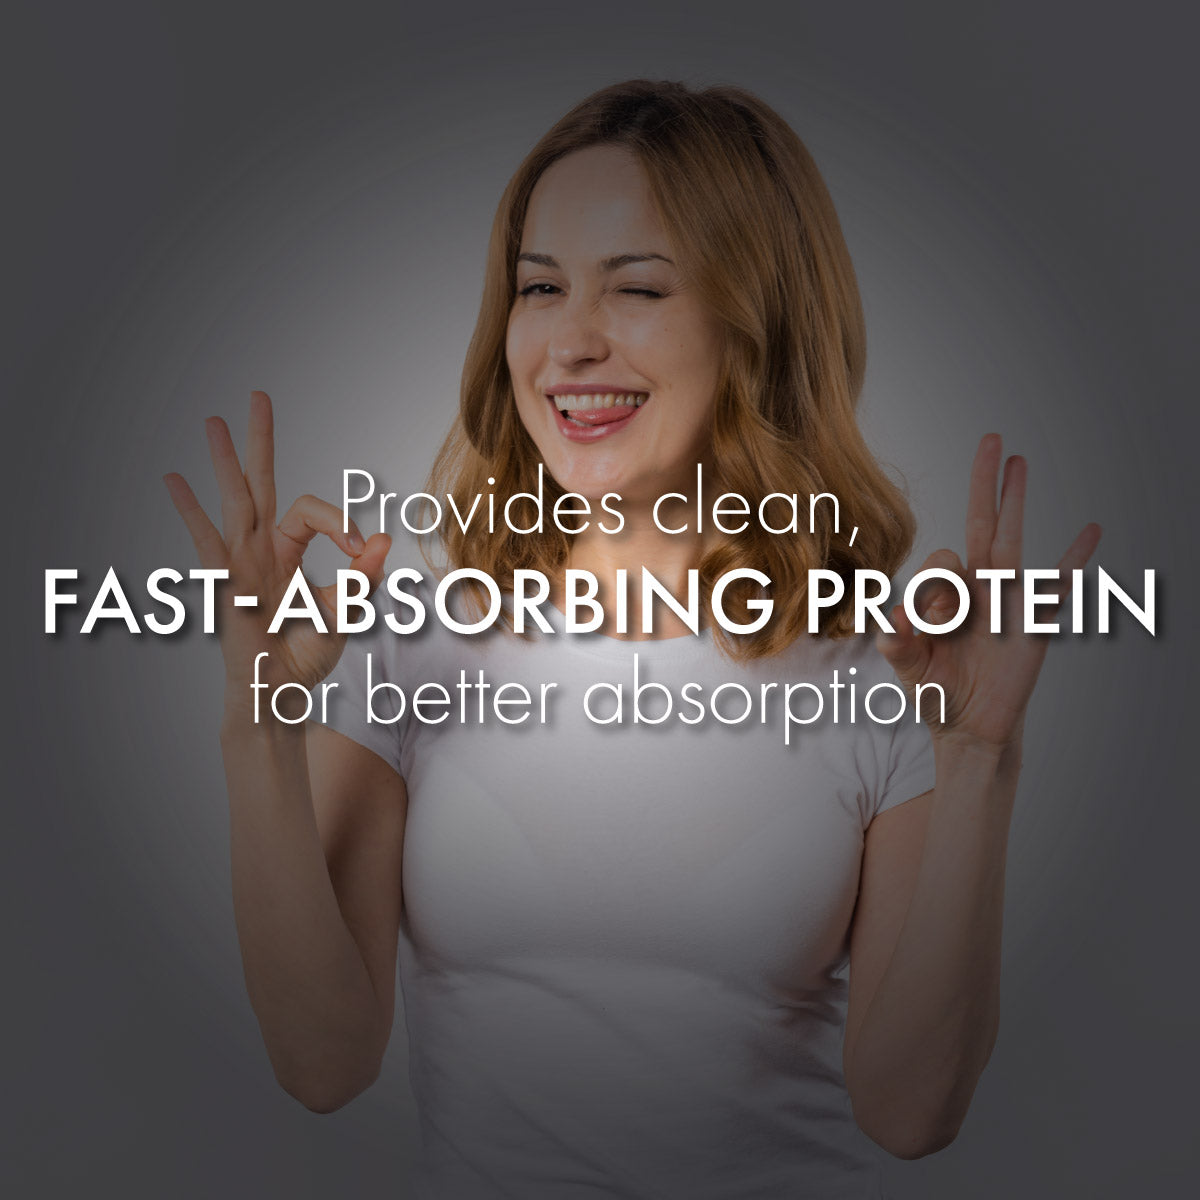 Buy Plant Protein & Get Herboslim FREE